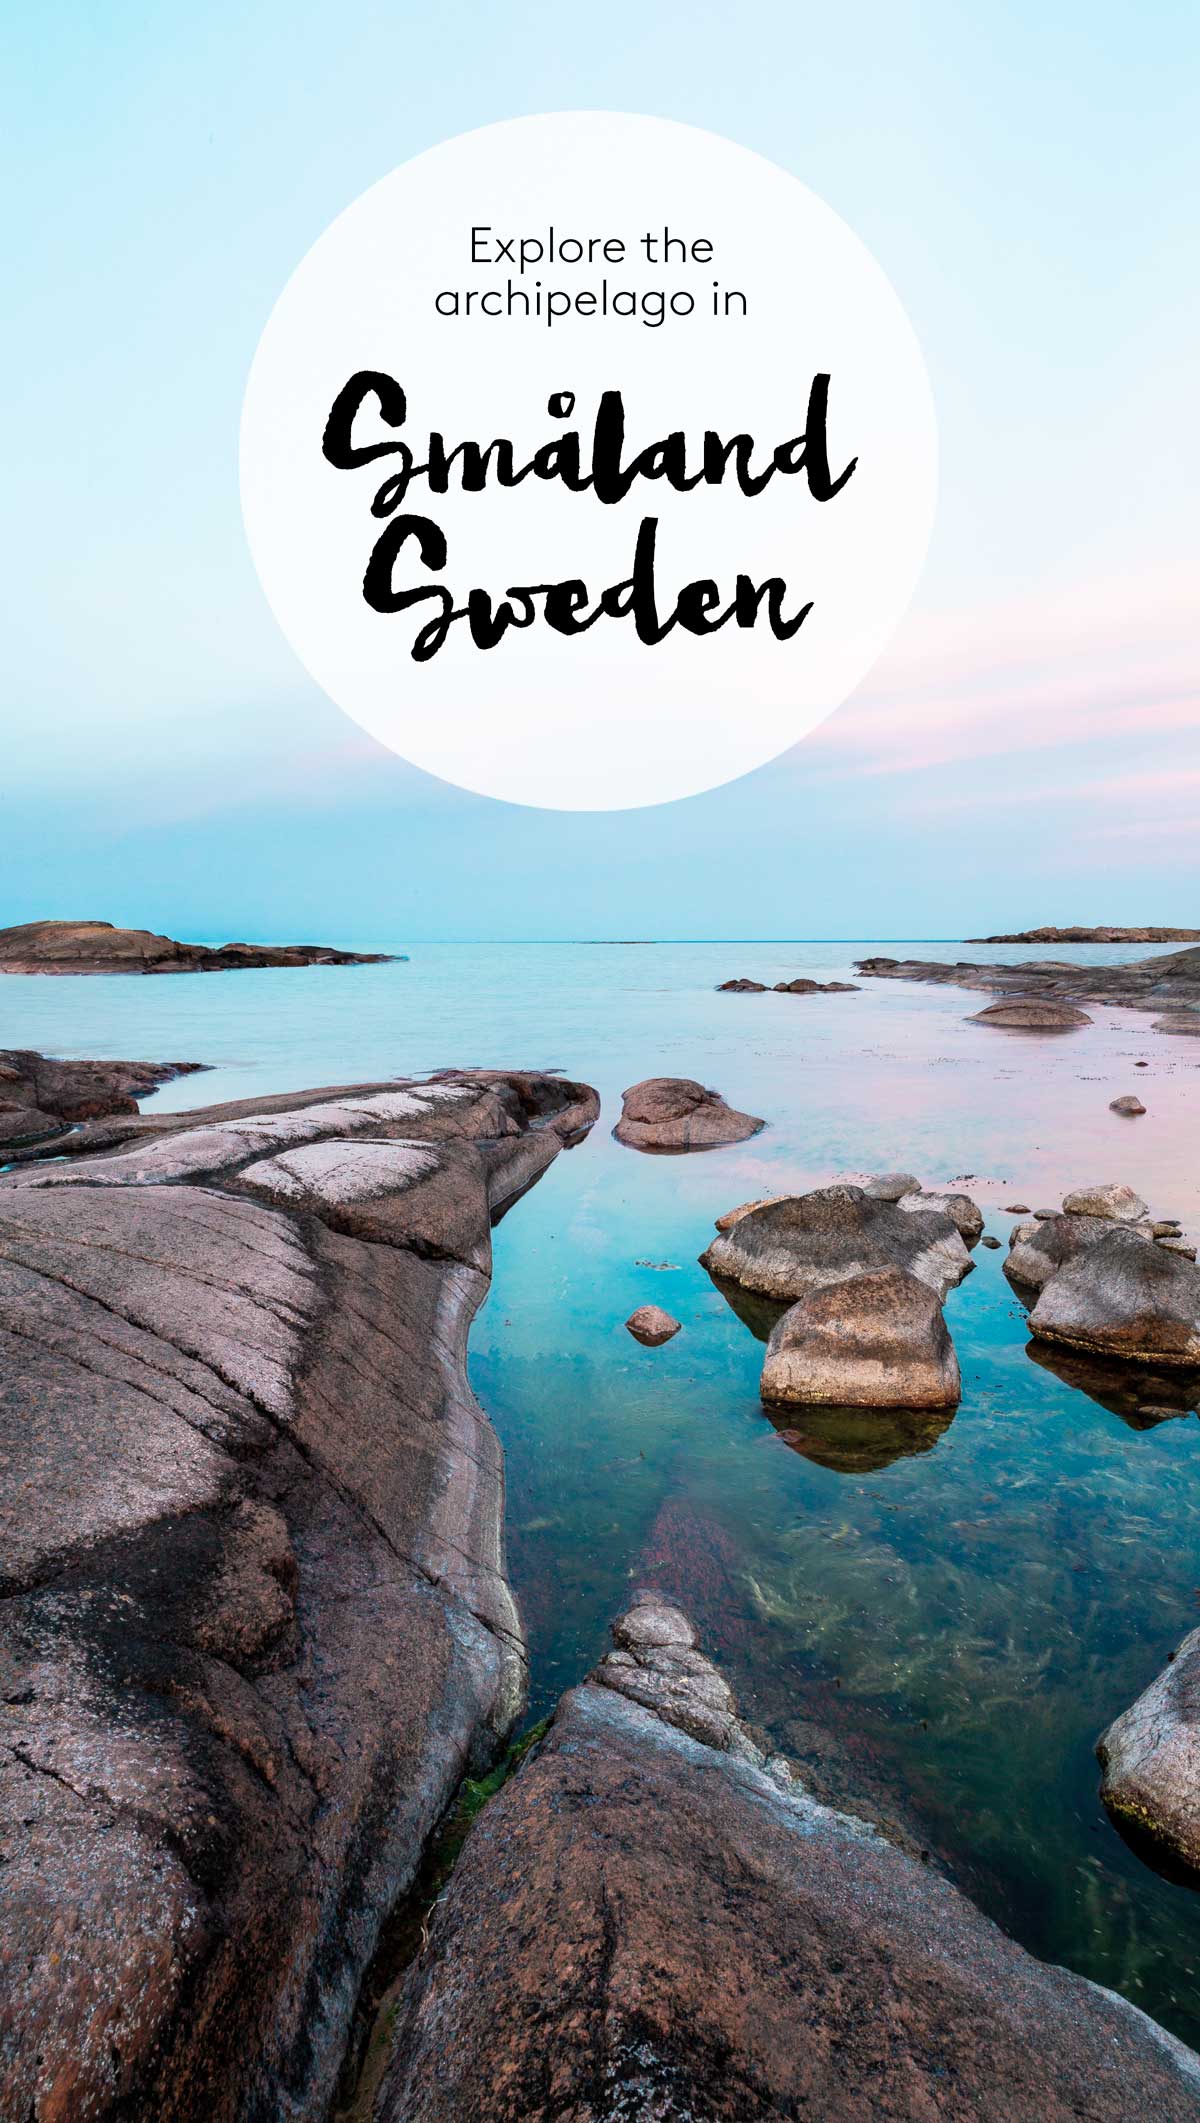 Exploring the archipelago in Småland Sweden